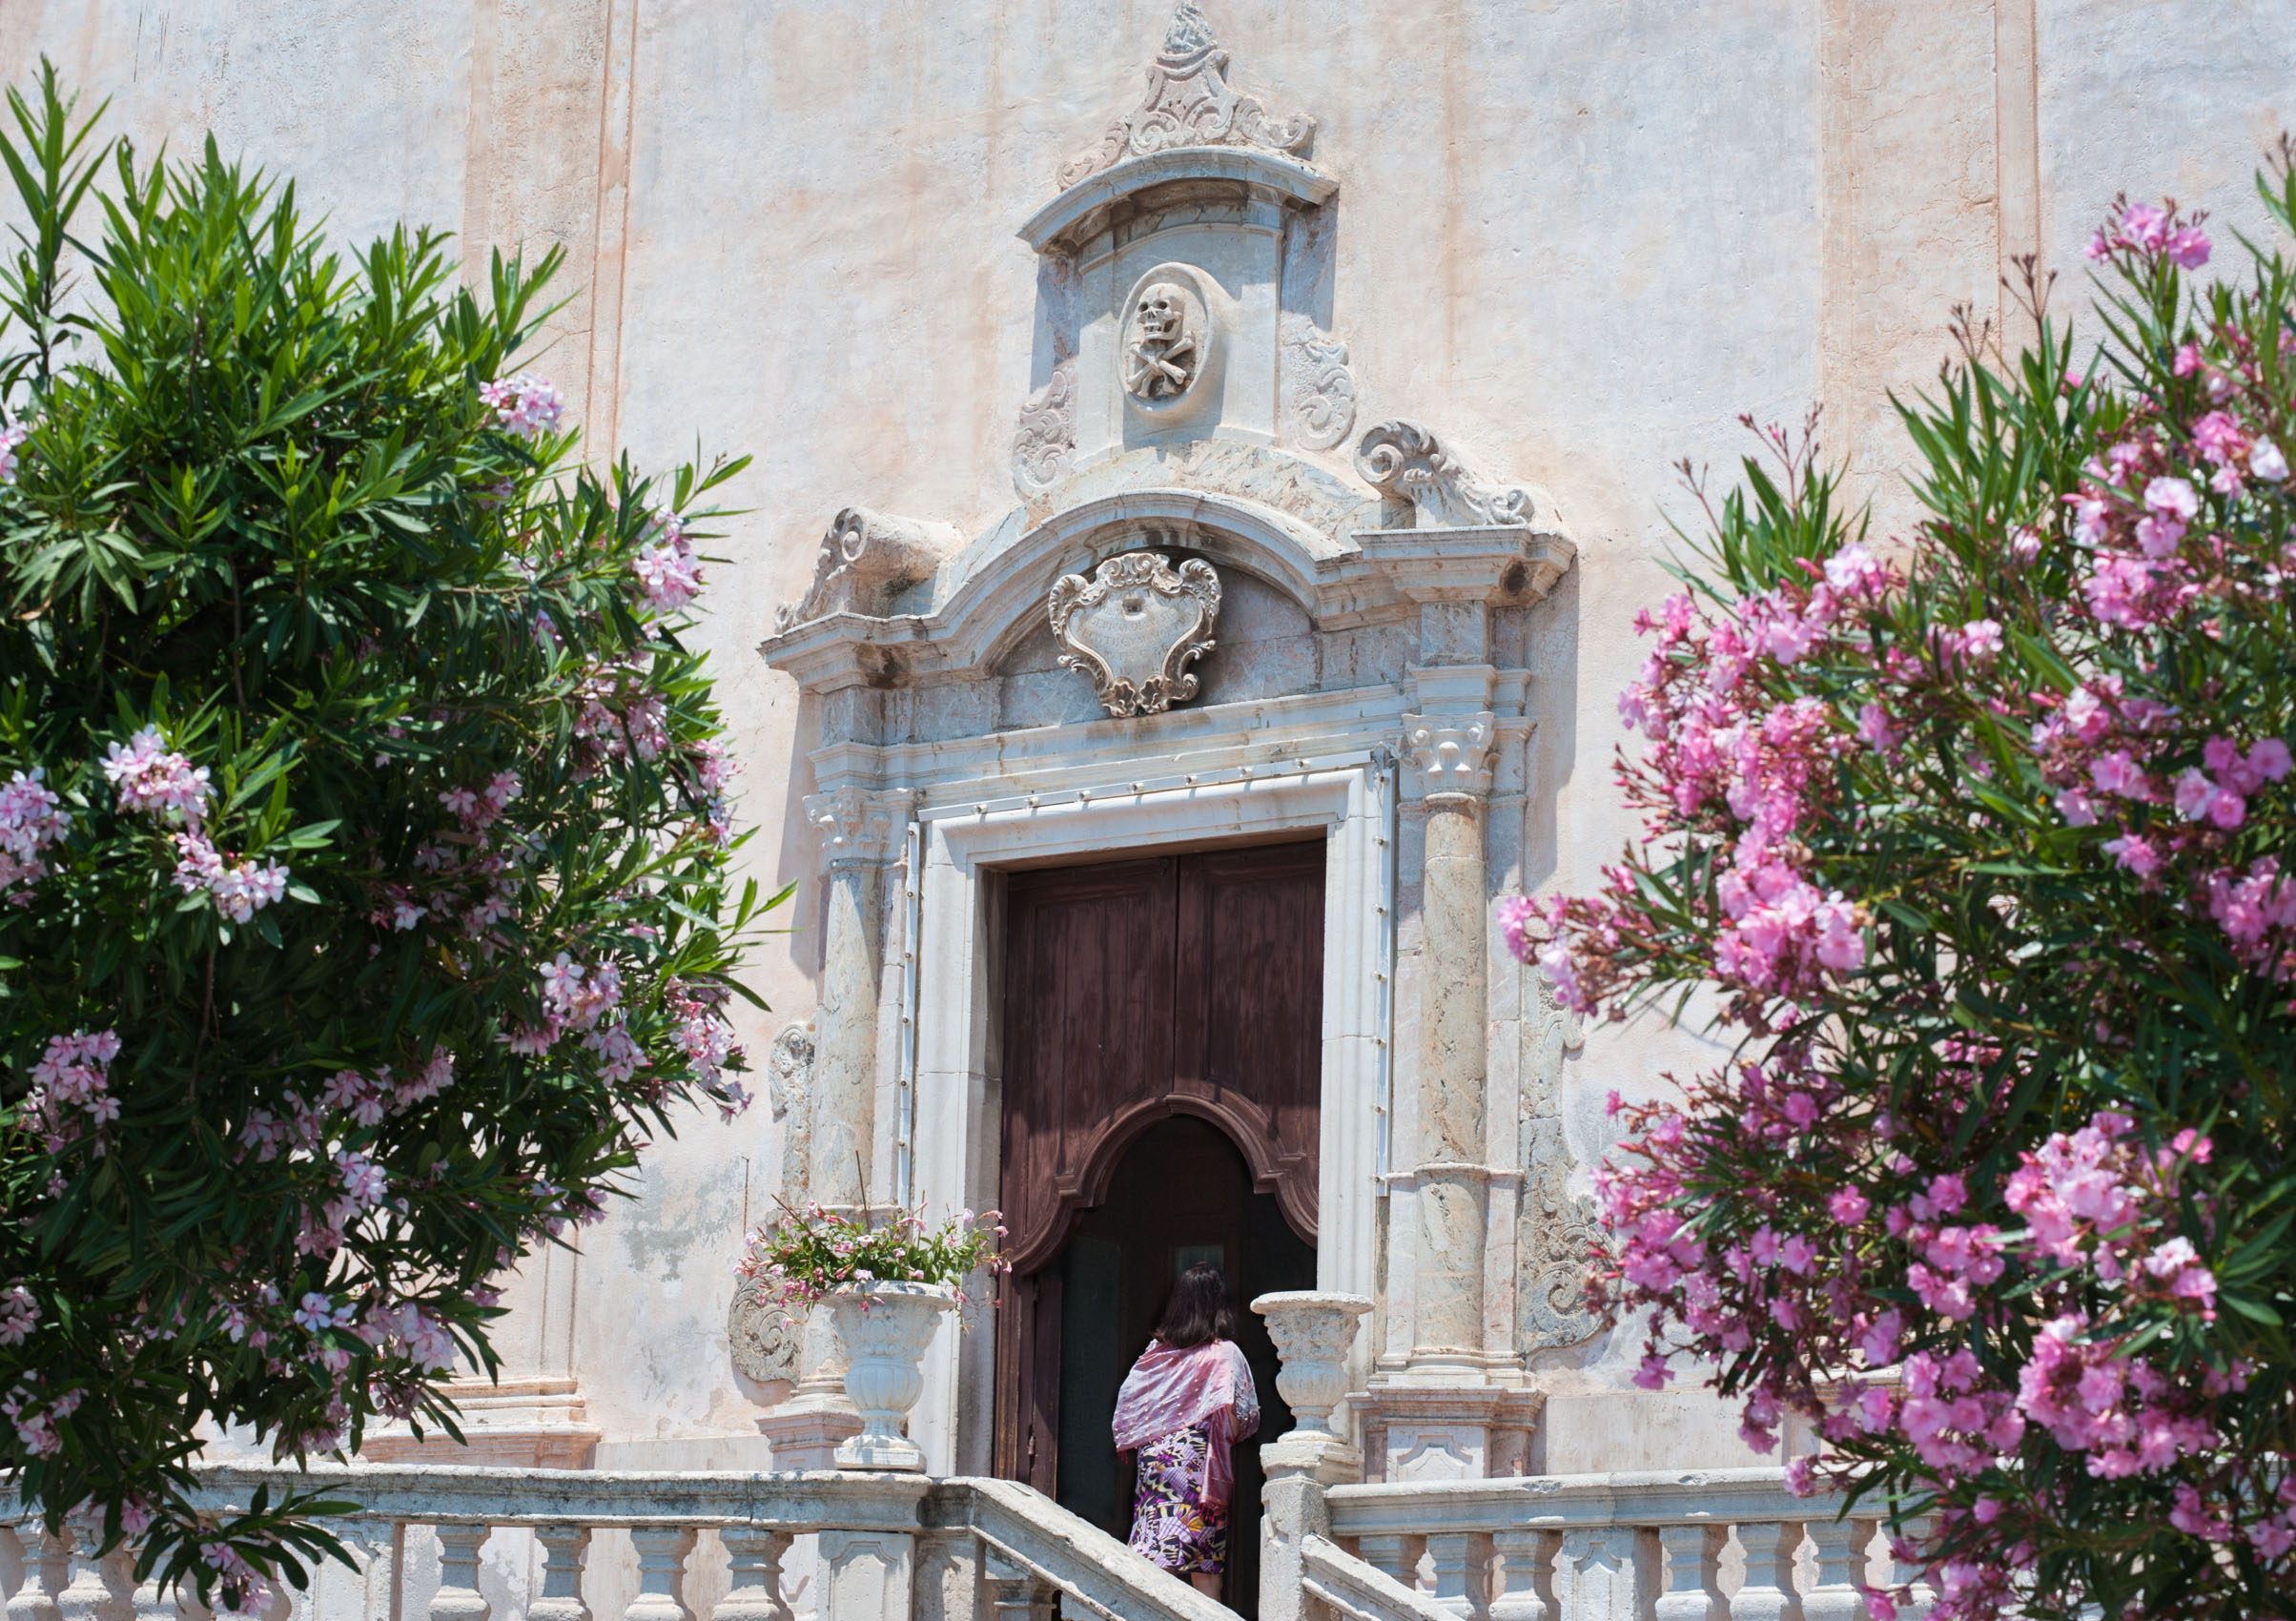 O18-651 Woman entering church at Taormina, Sicily